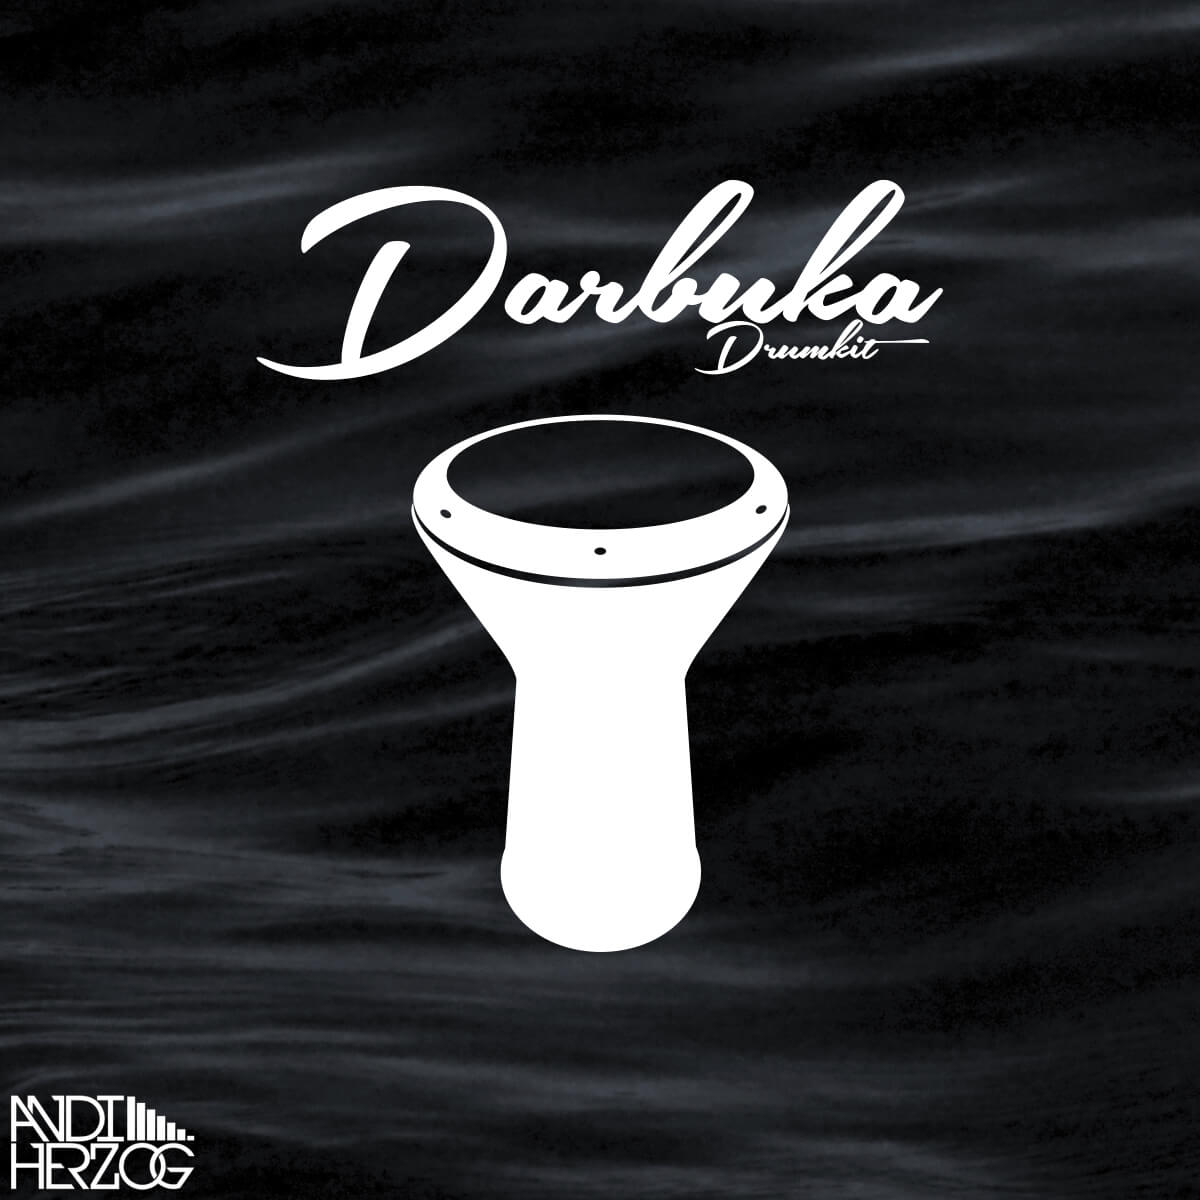 Darbuka Drumkit - Percussion Sounds - Andi Herzog